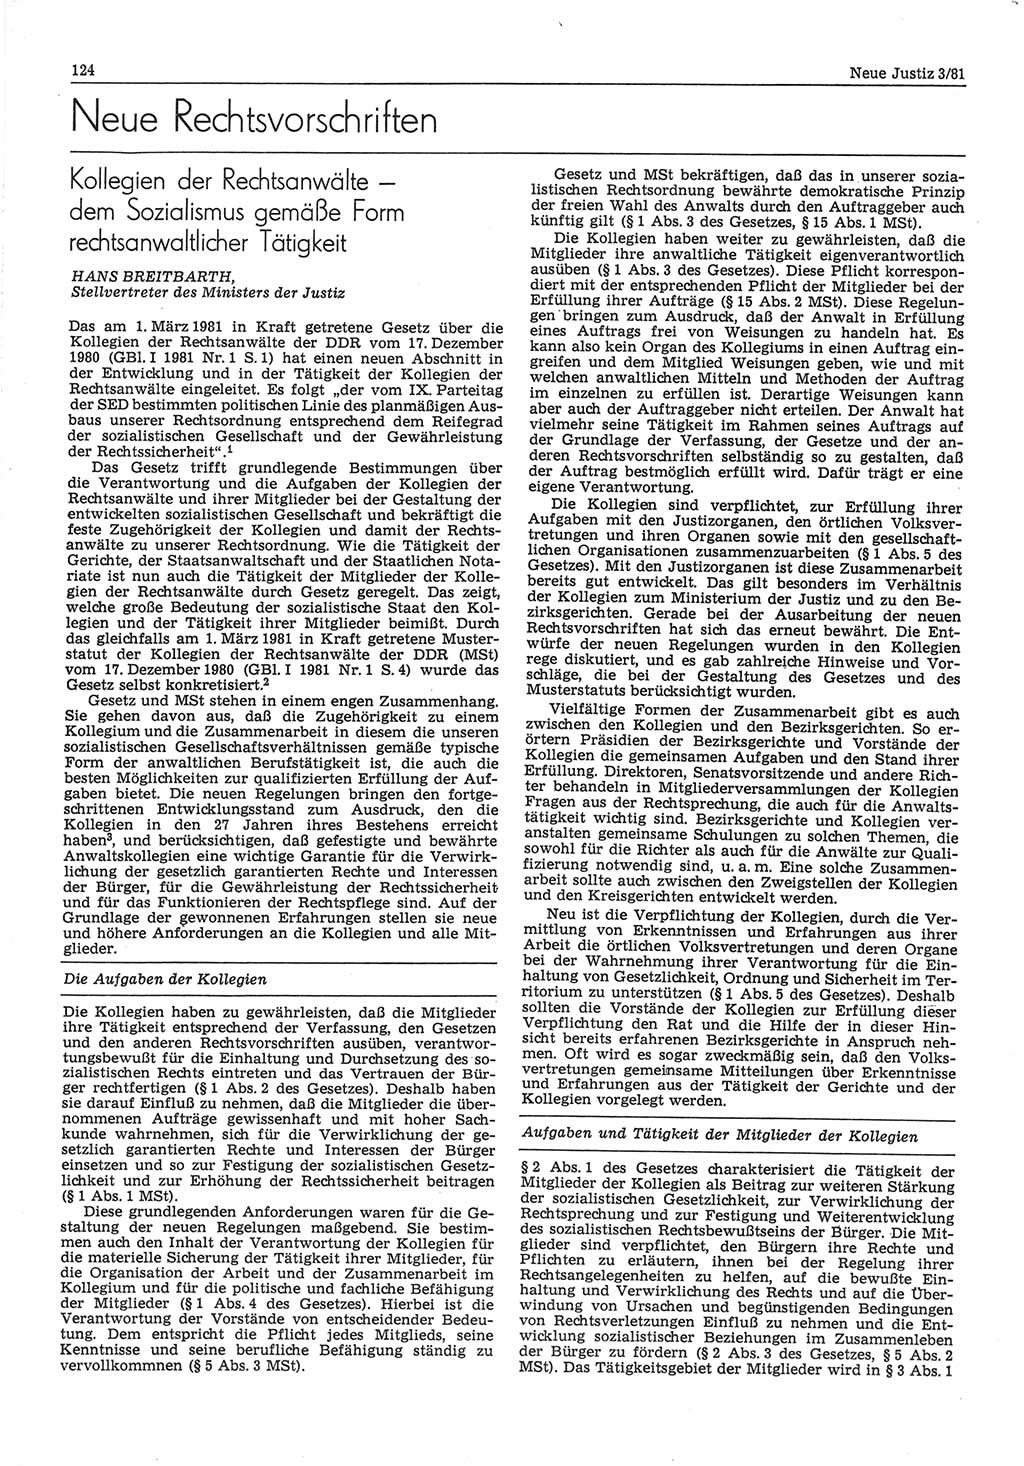 Neue Justiz (NJ), Zeitschrift für sozialistisches Recht und Gesetzlichkeit [Deutsche Demokratische Republik (DDR)], 35. Jahrgang 1981, Seite 124 (NJ DDR 1981, S. 124)